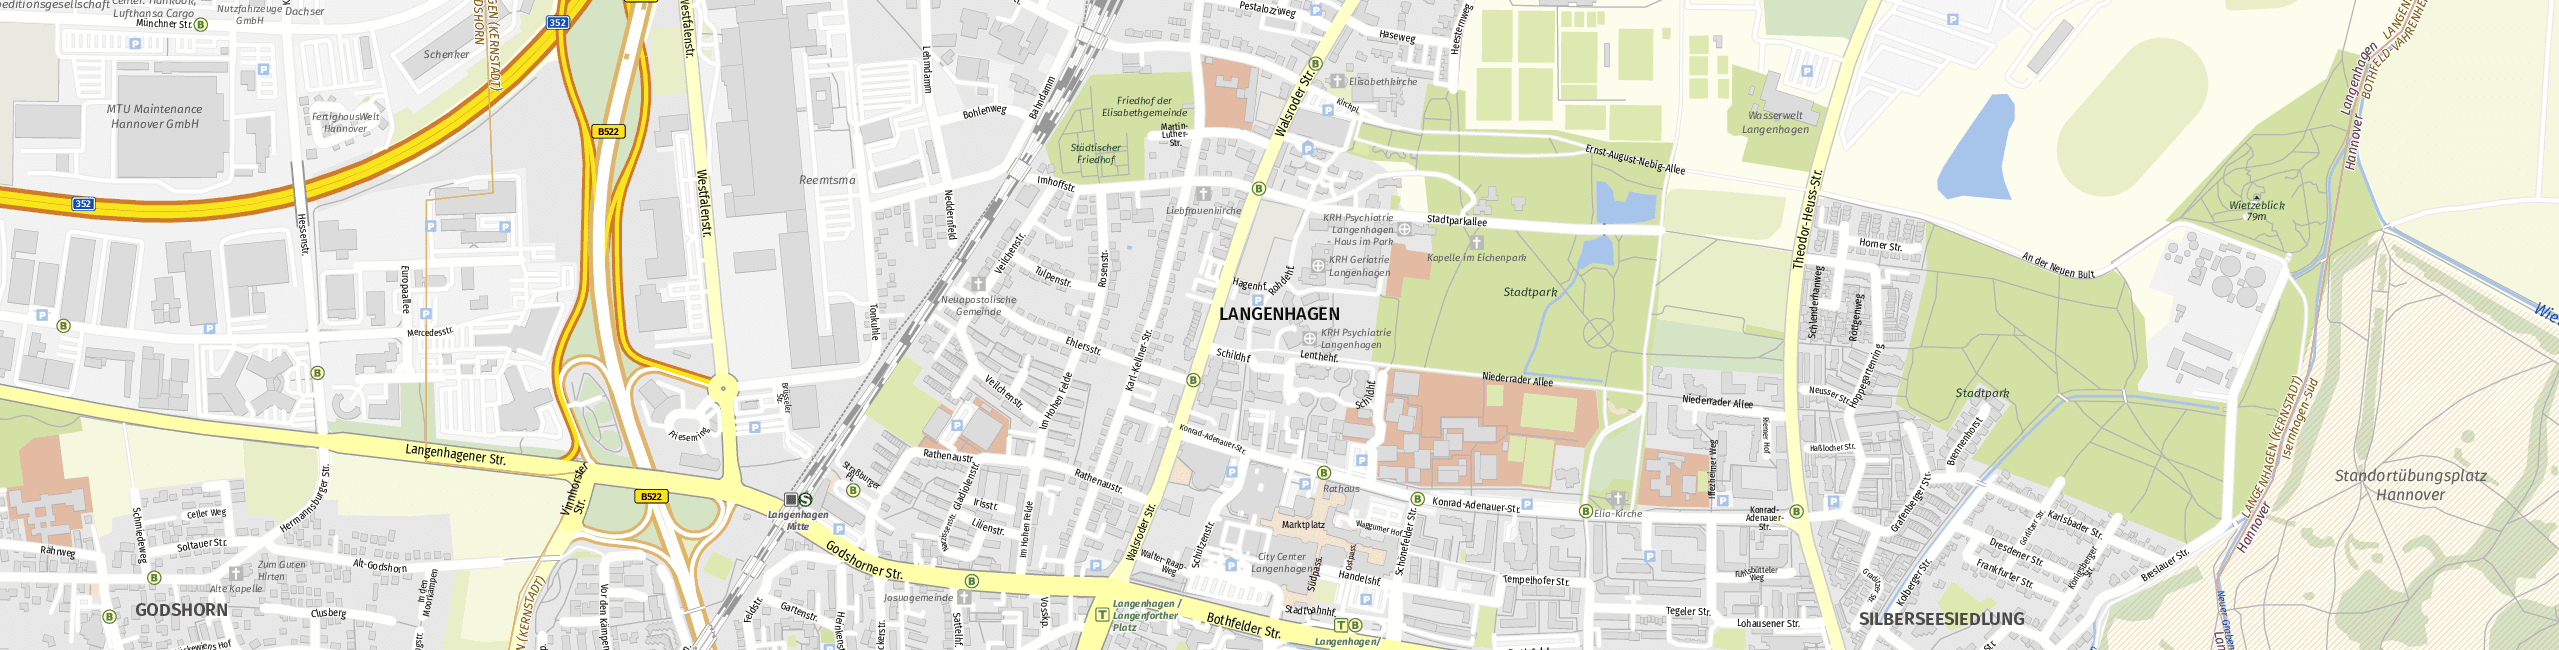 Stadtplan Langenhagen zum Downloaden.